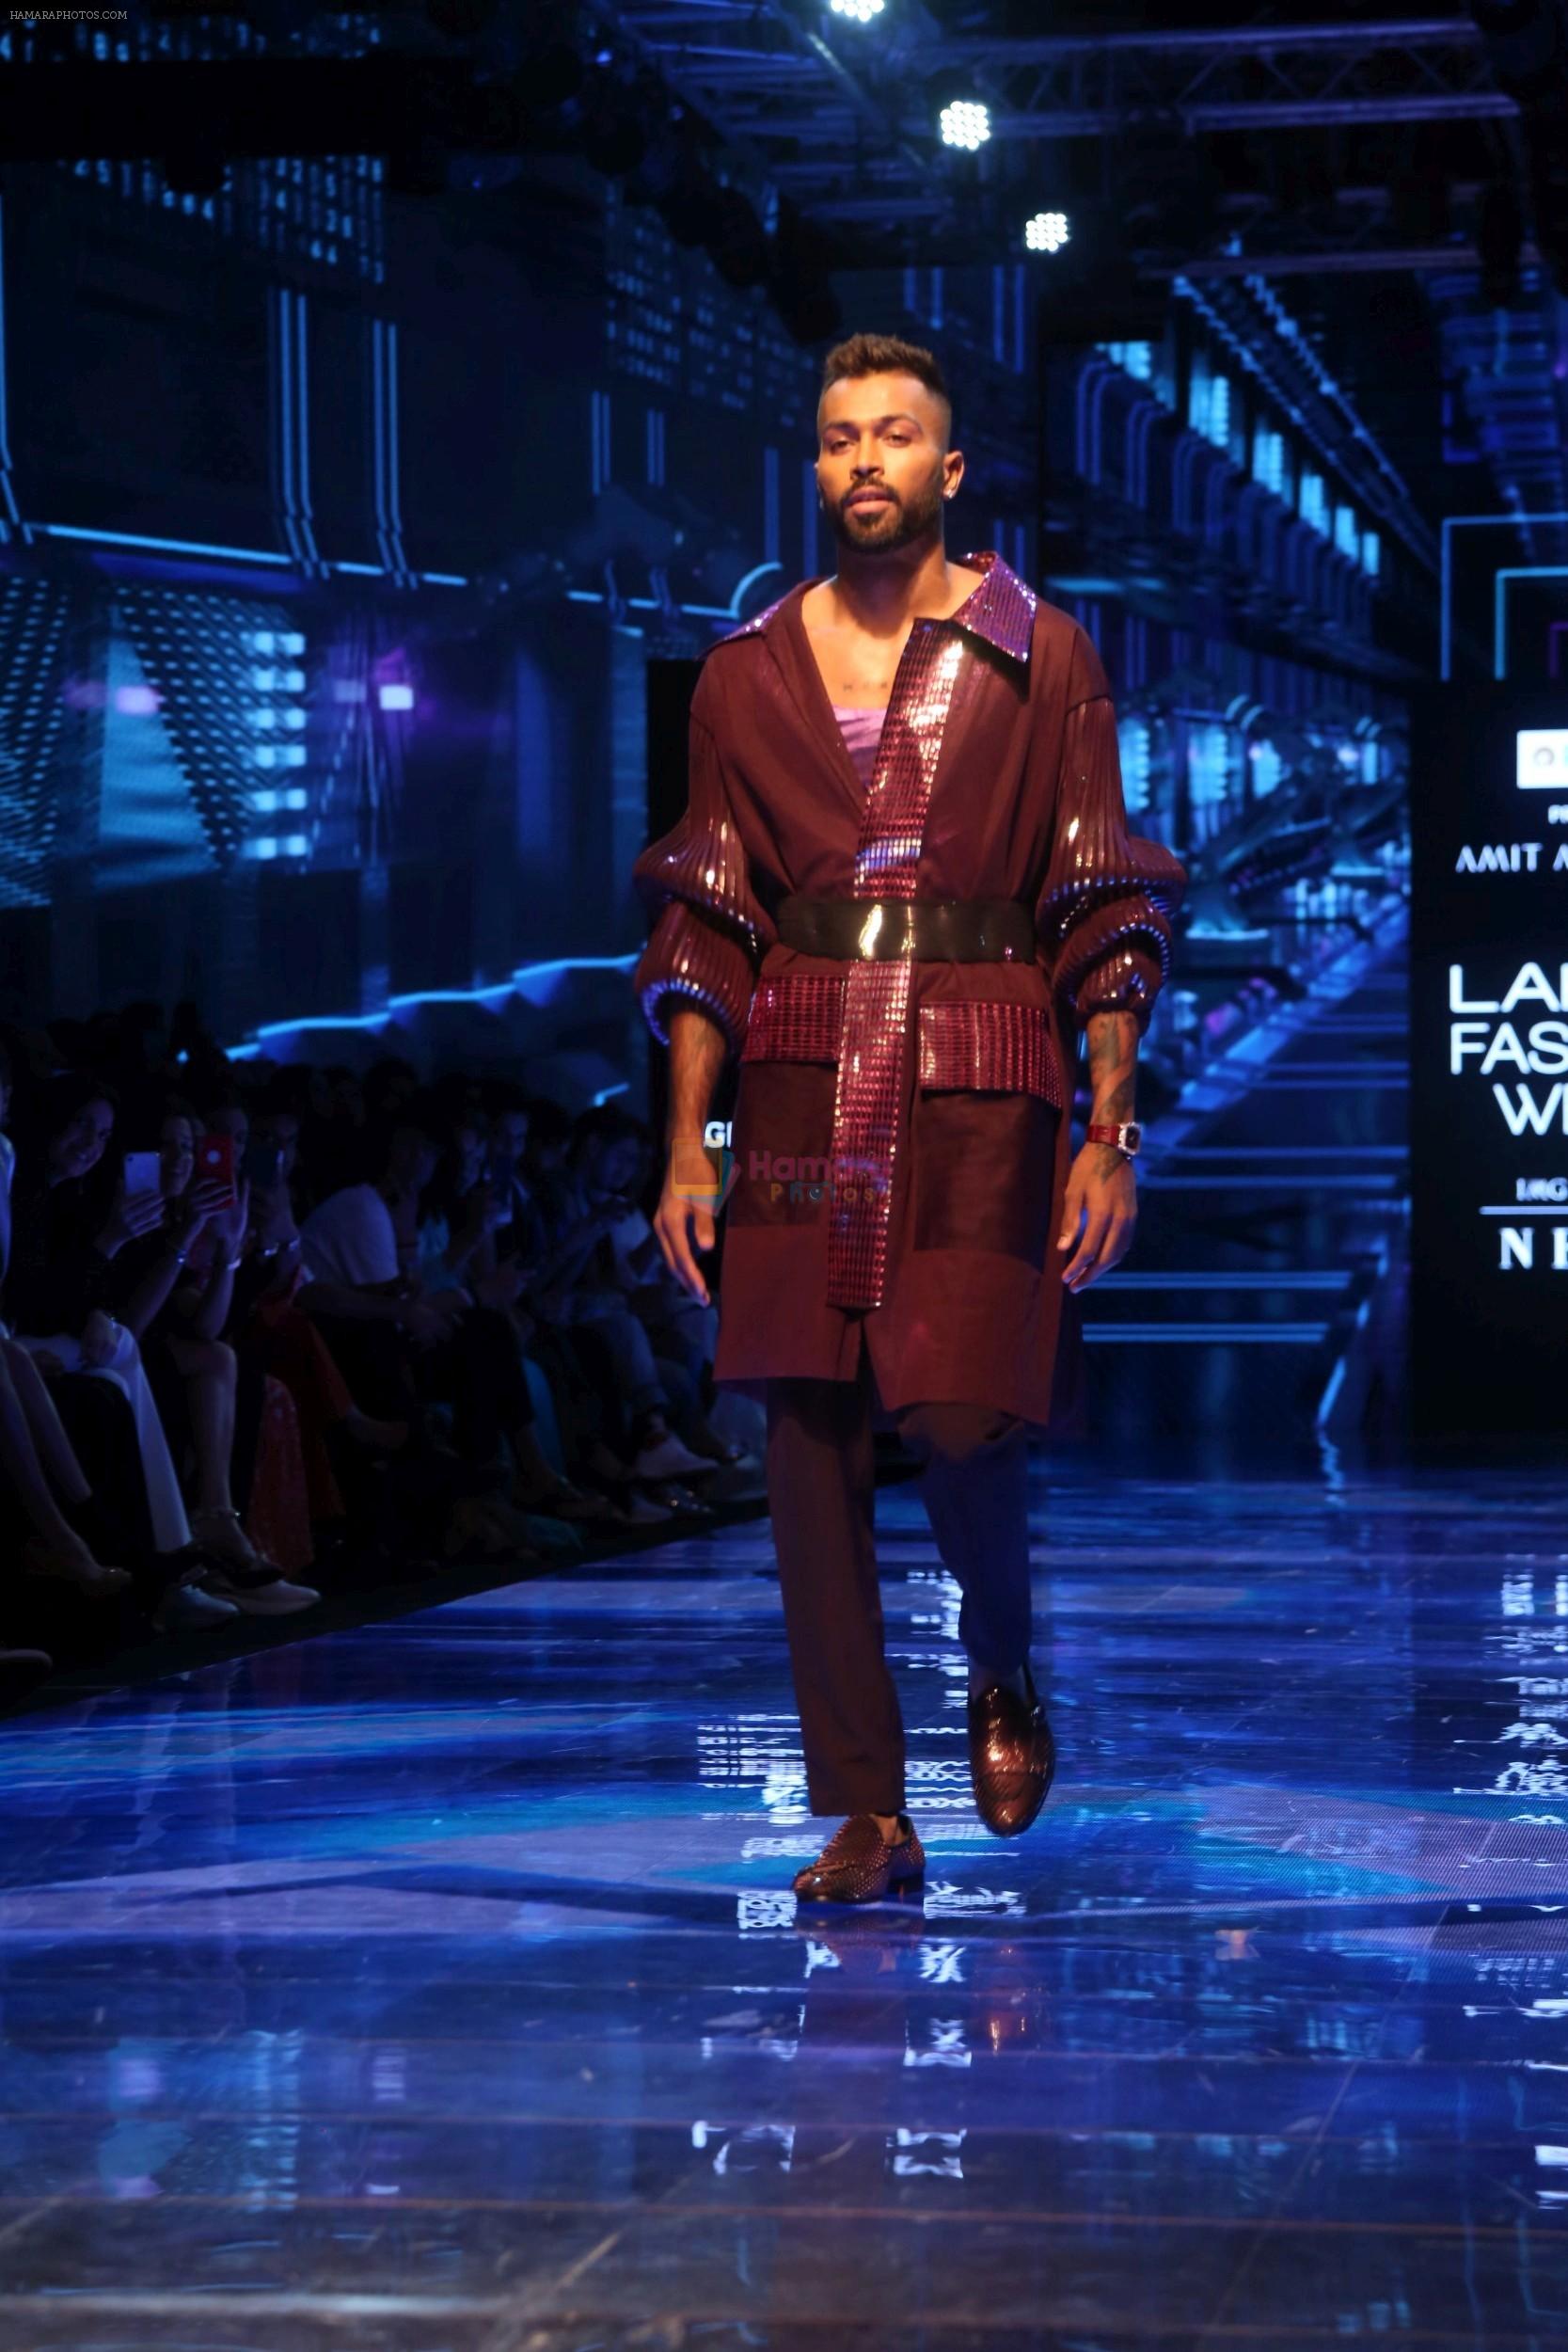 Hardik Pandya walk the ramp at Lakme Fashion week 2019 for designer Amit Aggarwal on 21st Aug 2019